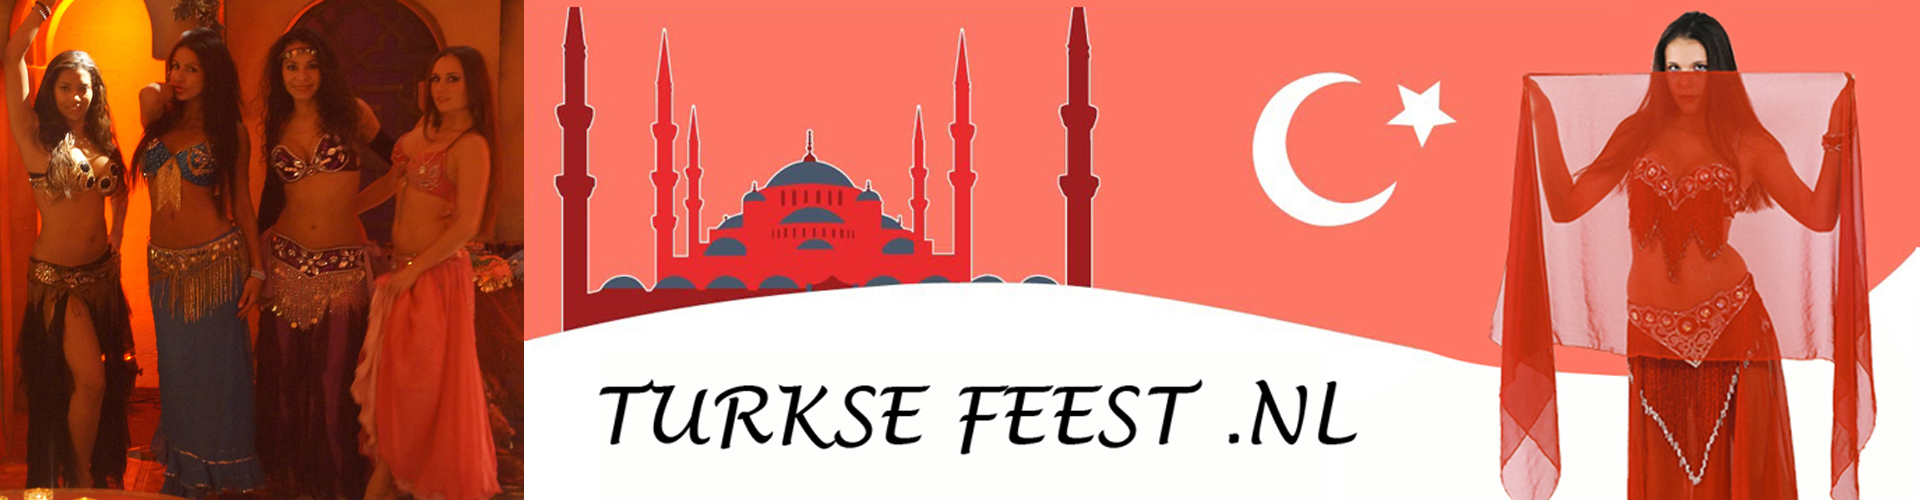 Turkse sfeerfeest